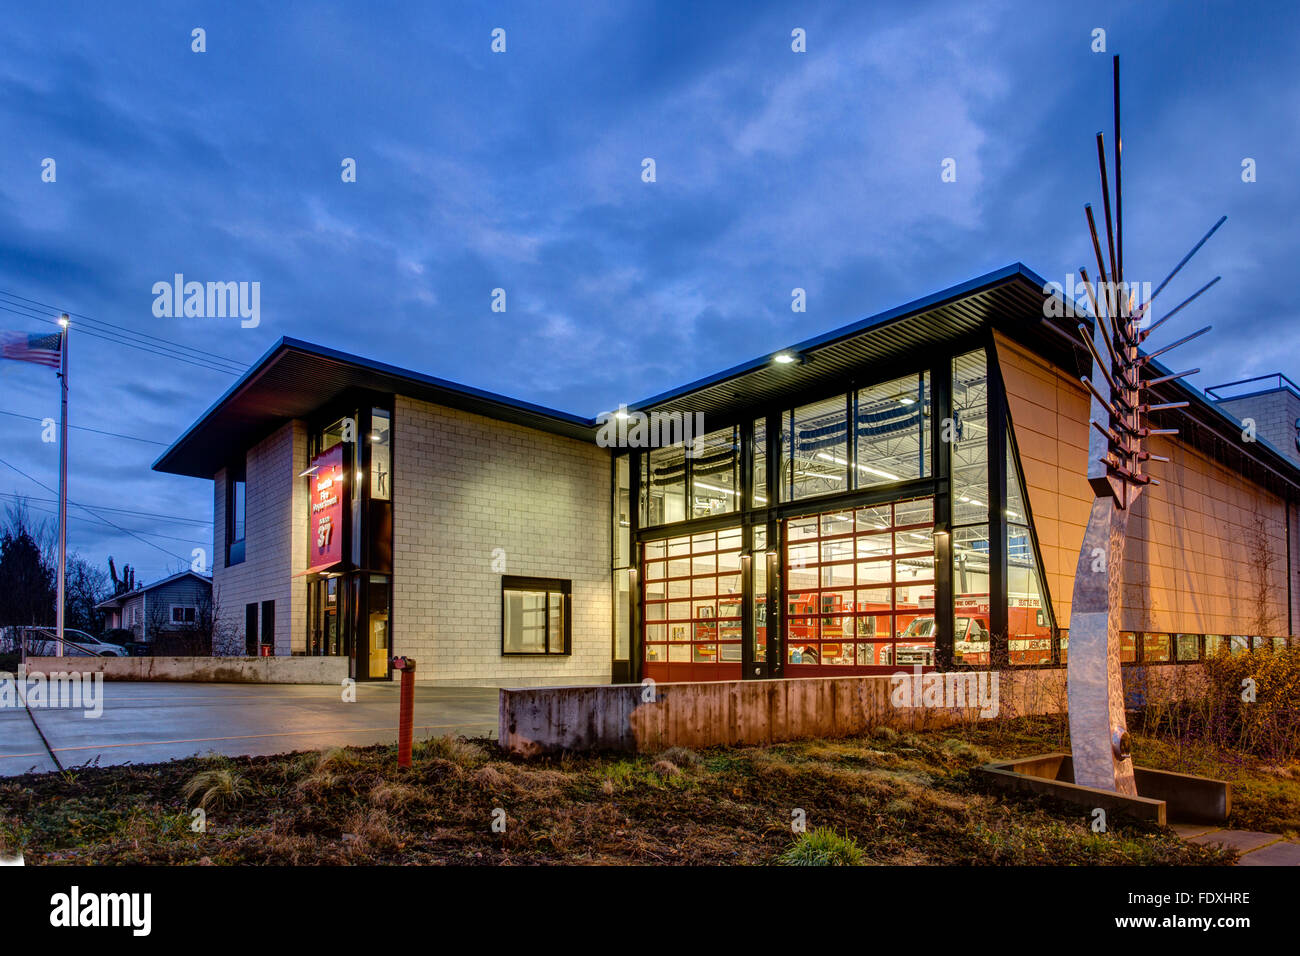 Fire Station à Seattle Washington USA. Photographié au crépuscule. Banque D'Images